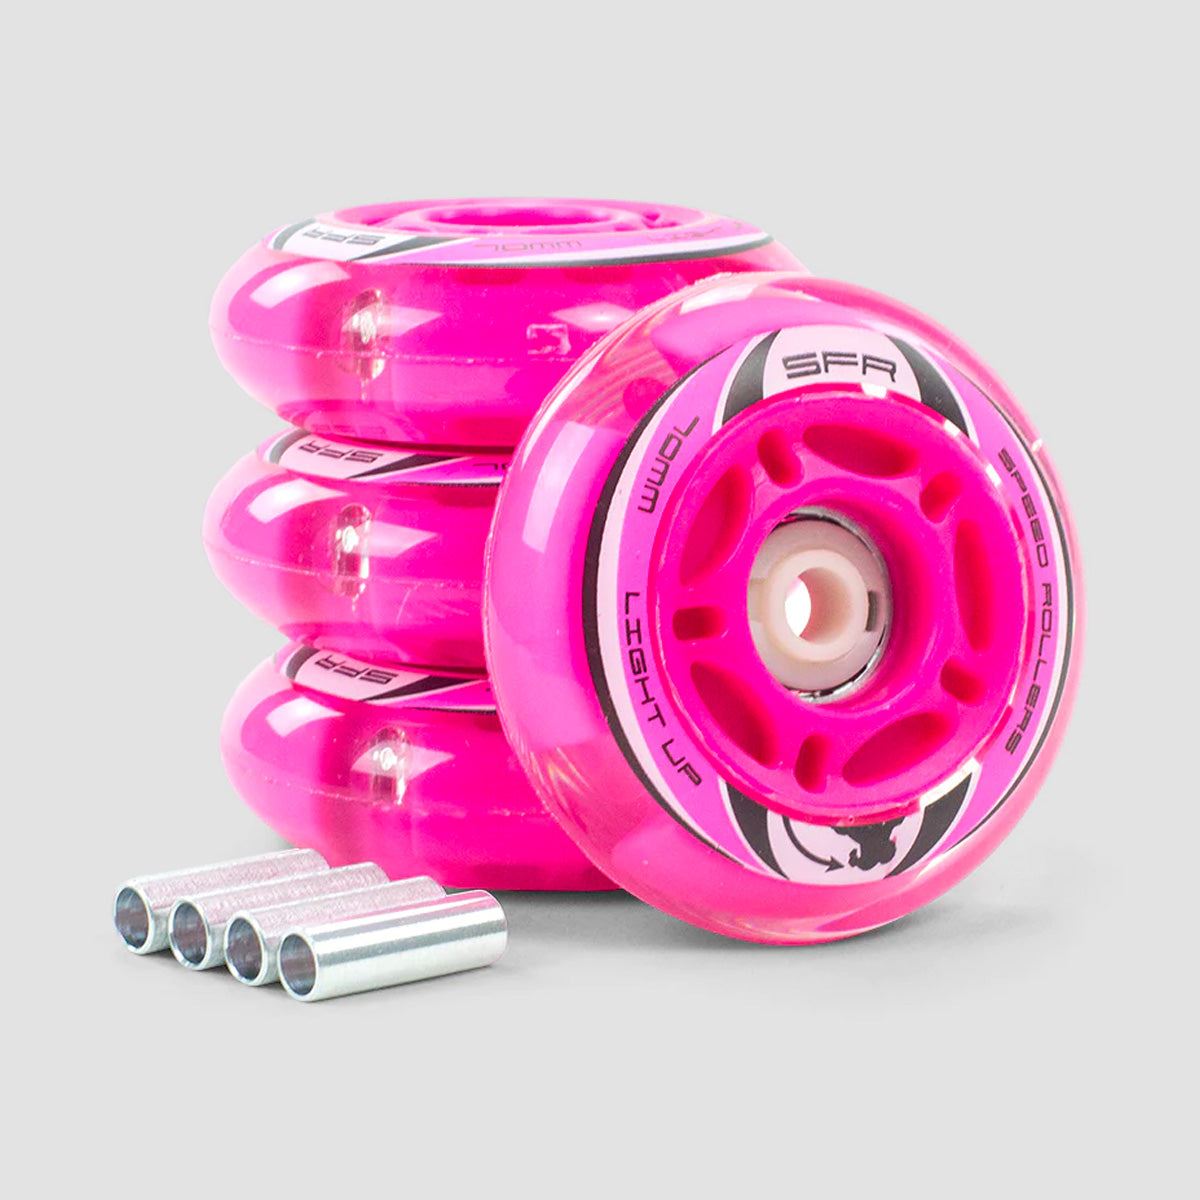 SFR Light Up Inline Wheels Pink 64mm